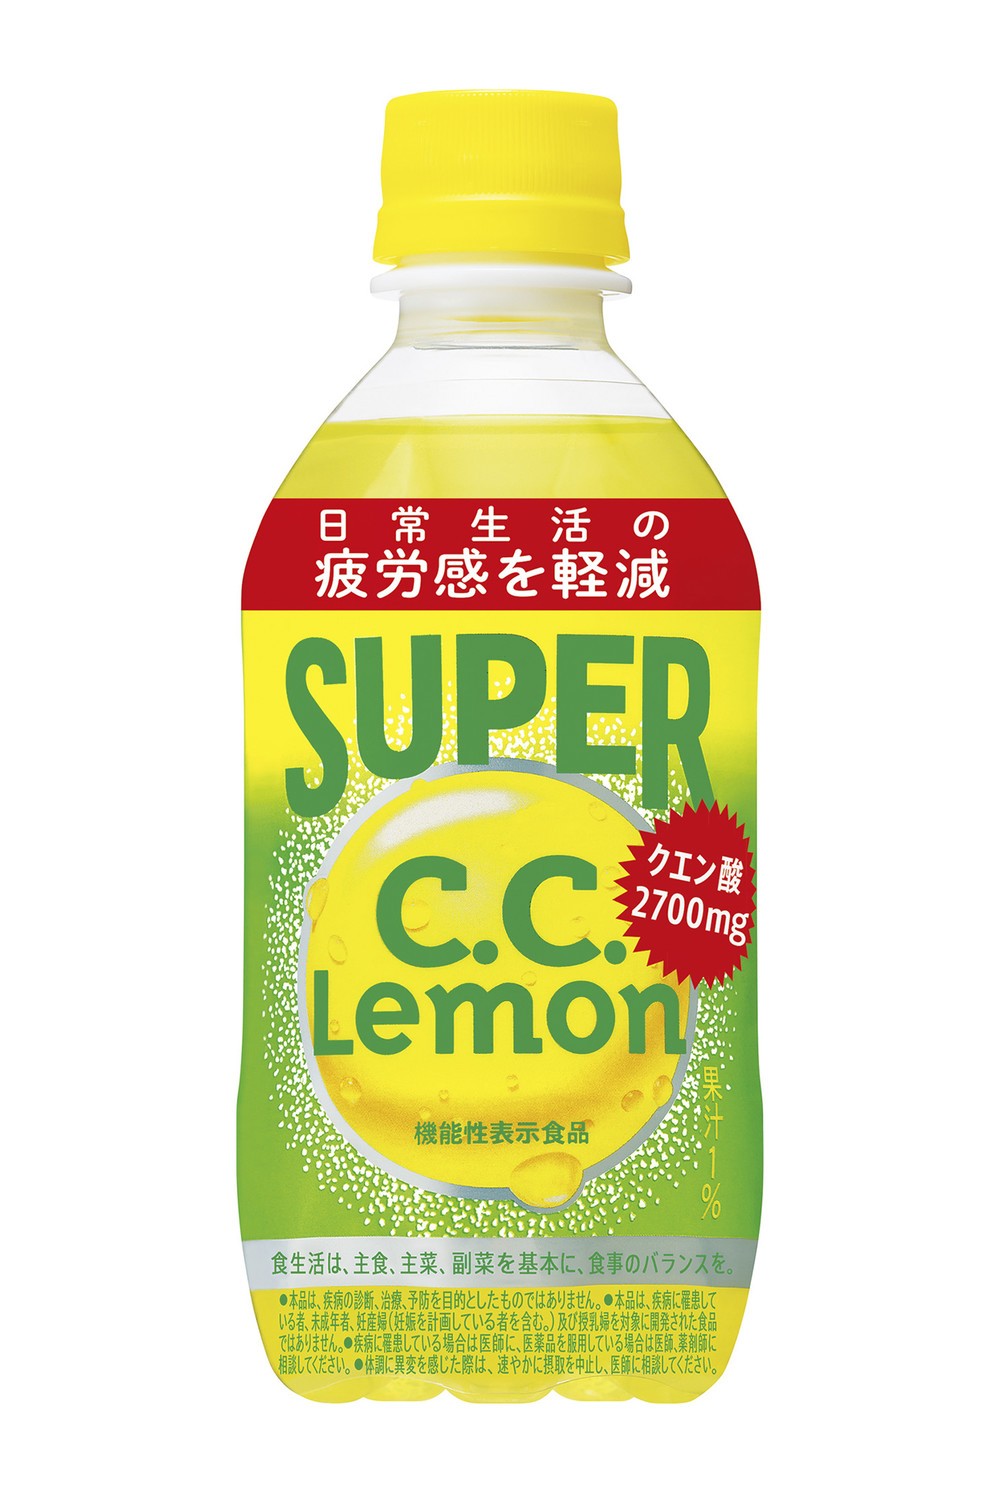 果汁系炭酸飲料で初の機能性表示食品 「スーパーC.C.レモン」発売